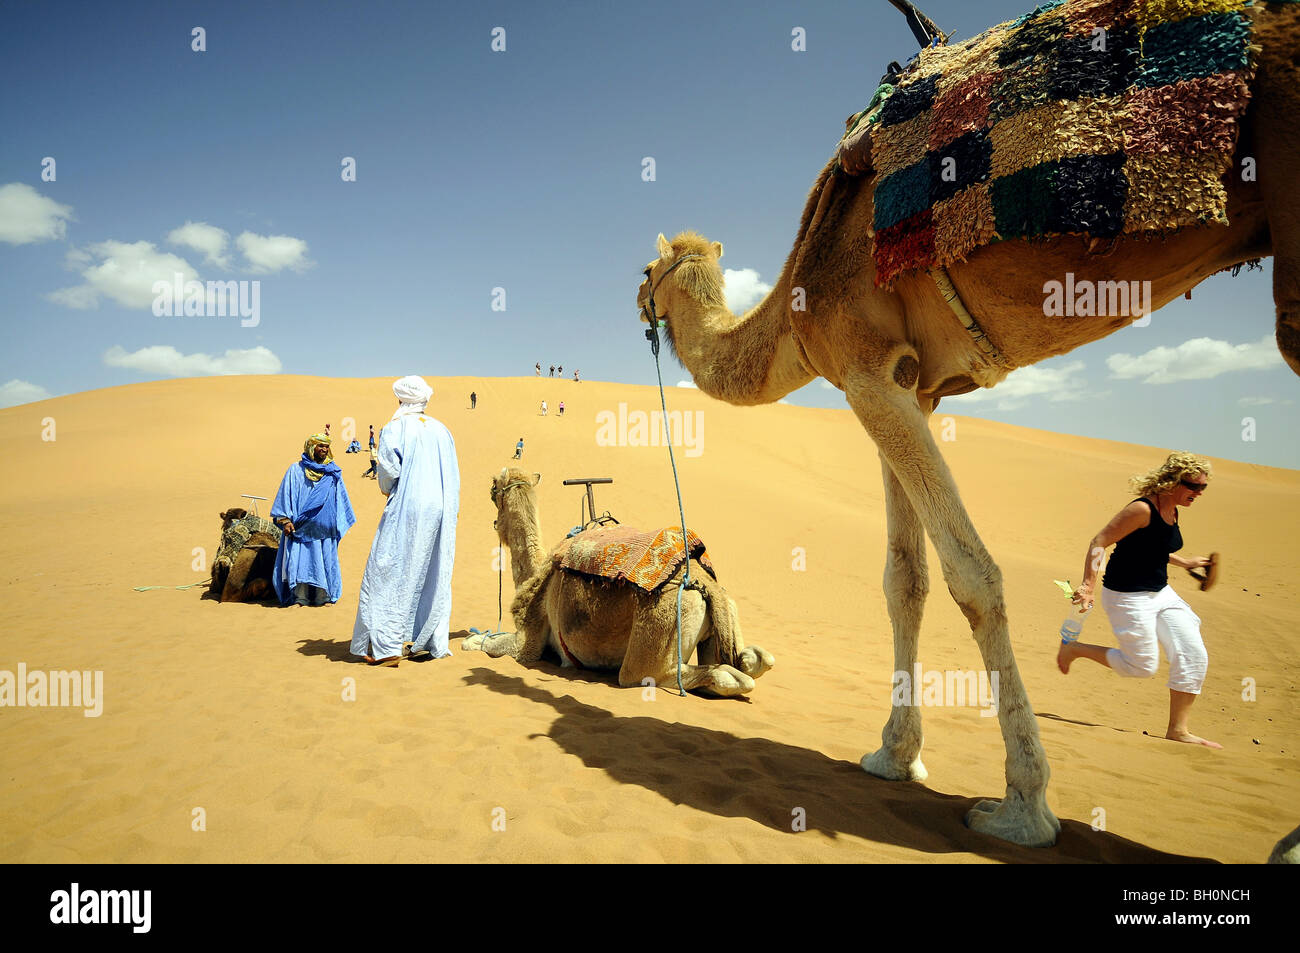 Les sections locales, les touristes et les chameaux sur un sanddune, vallée du Draa, dans le sud du Maroc, Maroc, Afrique Banque D'Images